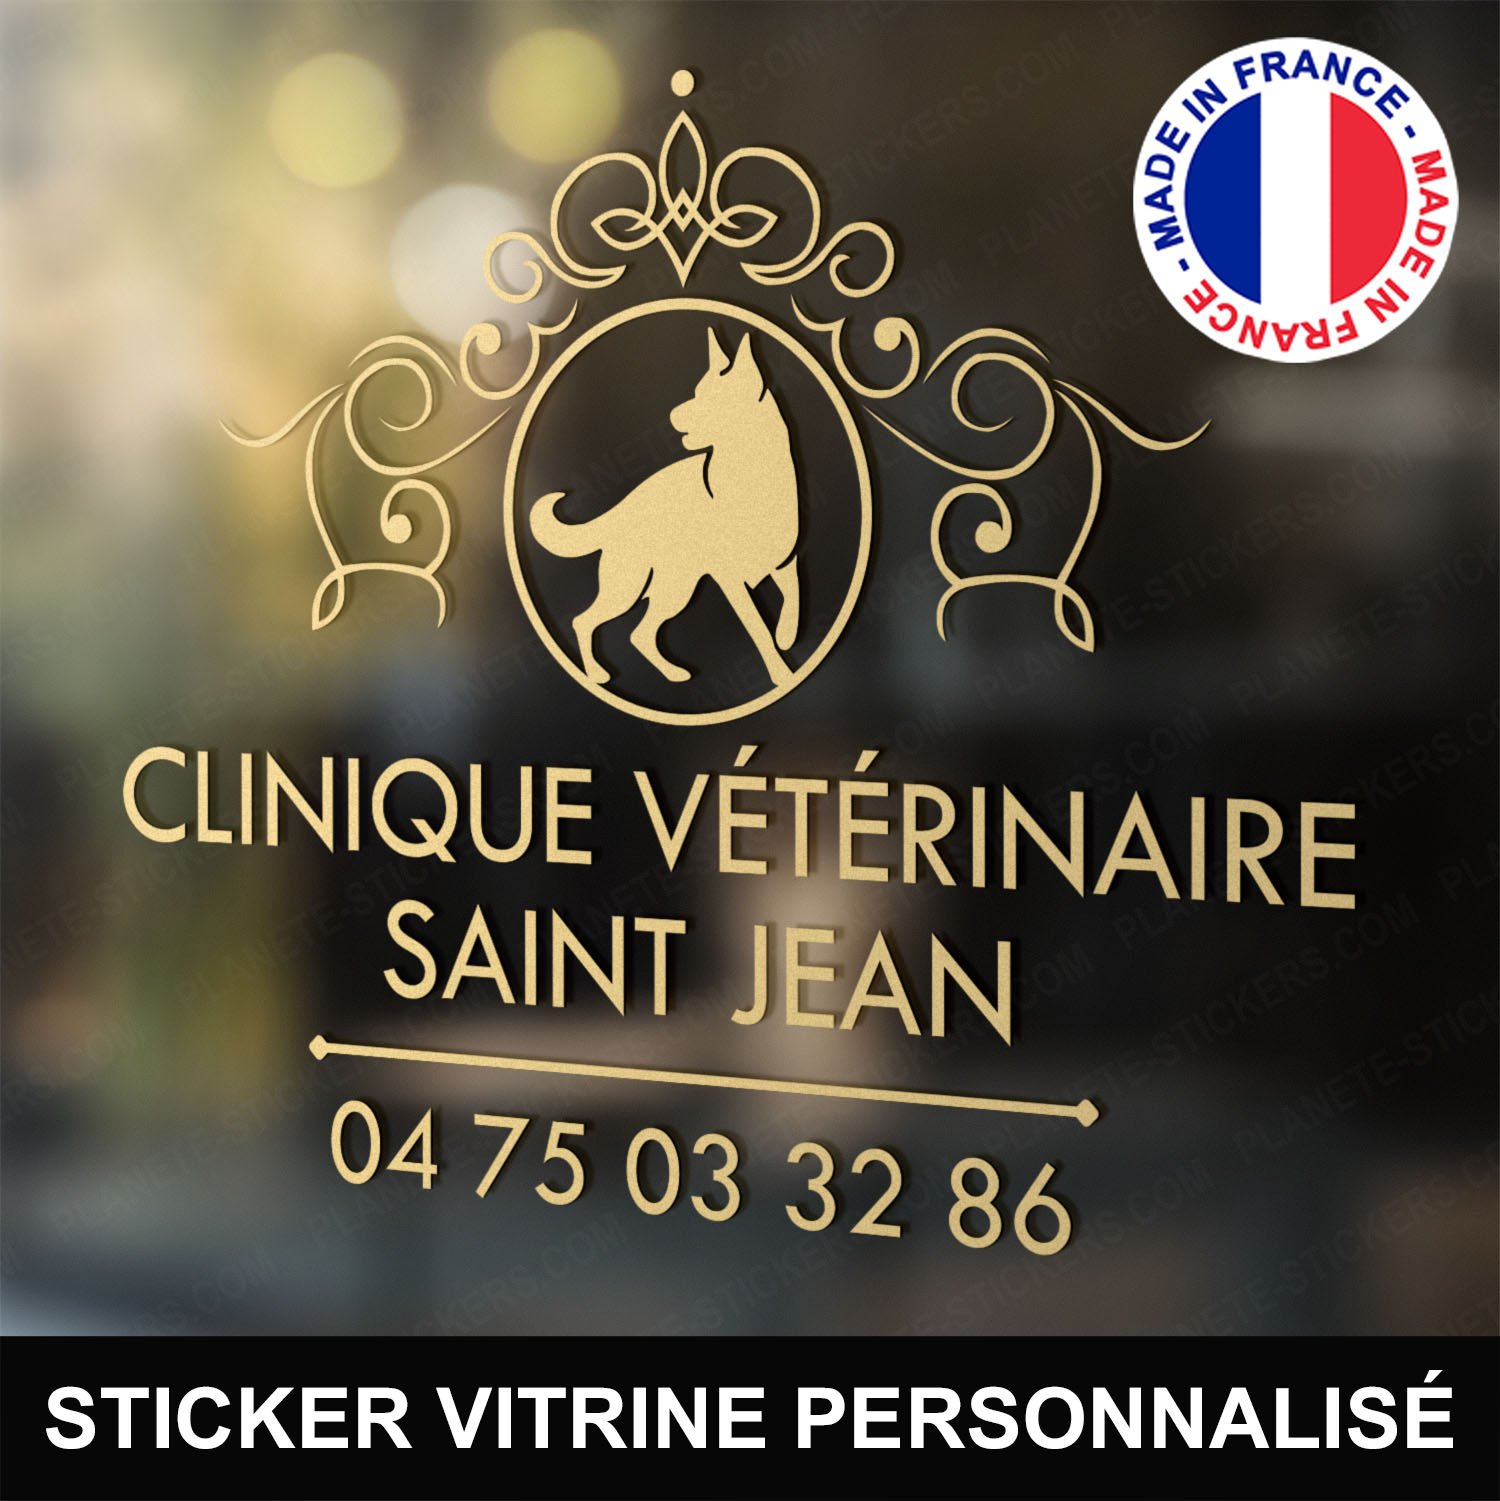 ref15veterinairevitrine-stickers-clinique-vétérinaire-vitrine-sticker-personnalisé-autocollant-pro-veterinaire-professionnel